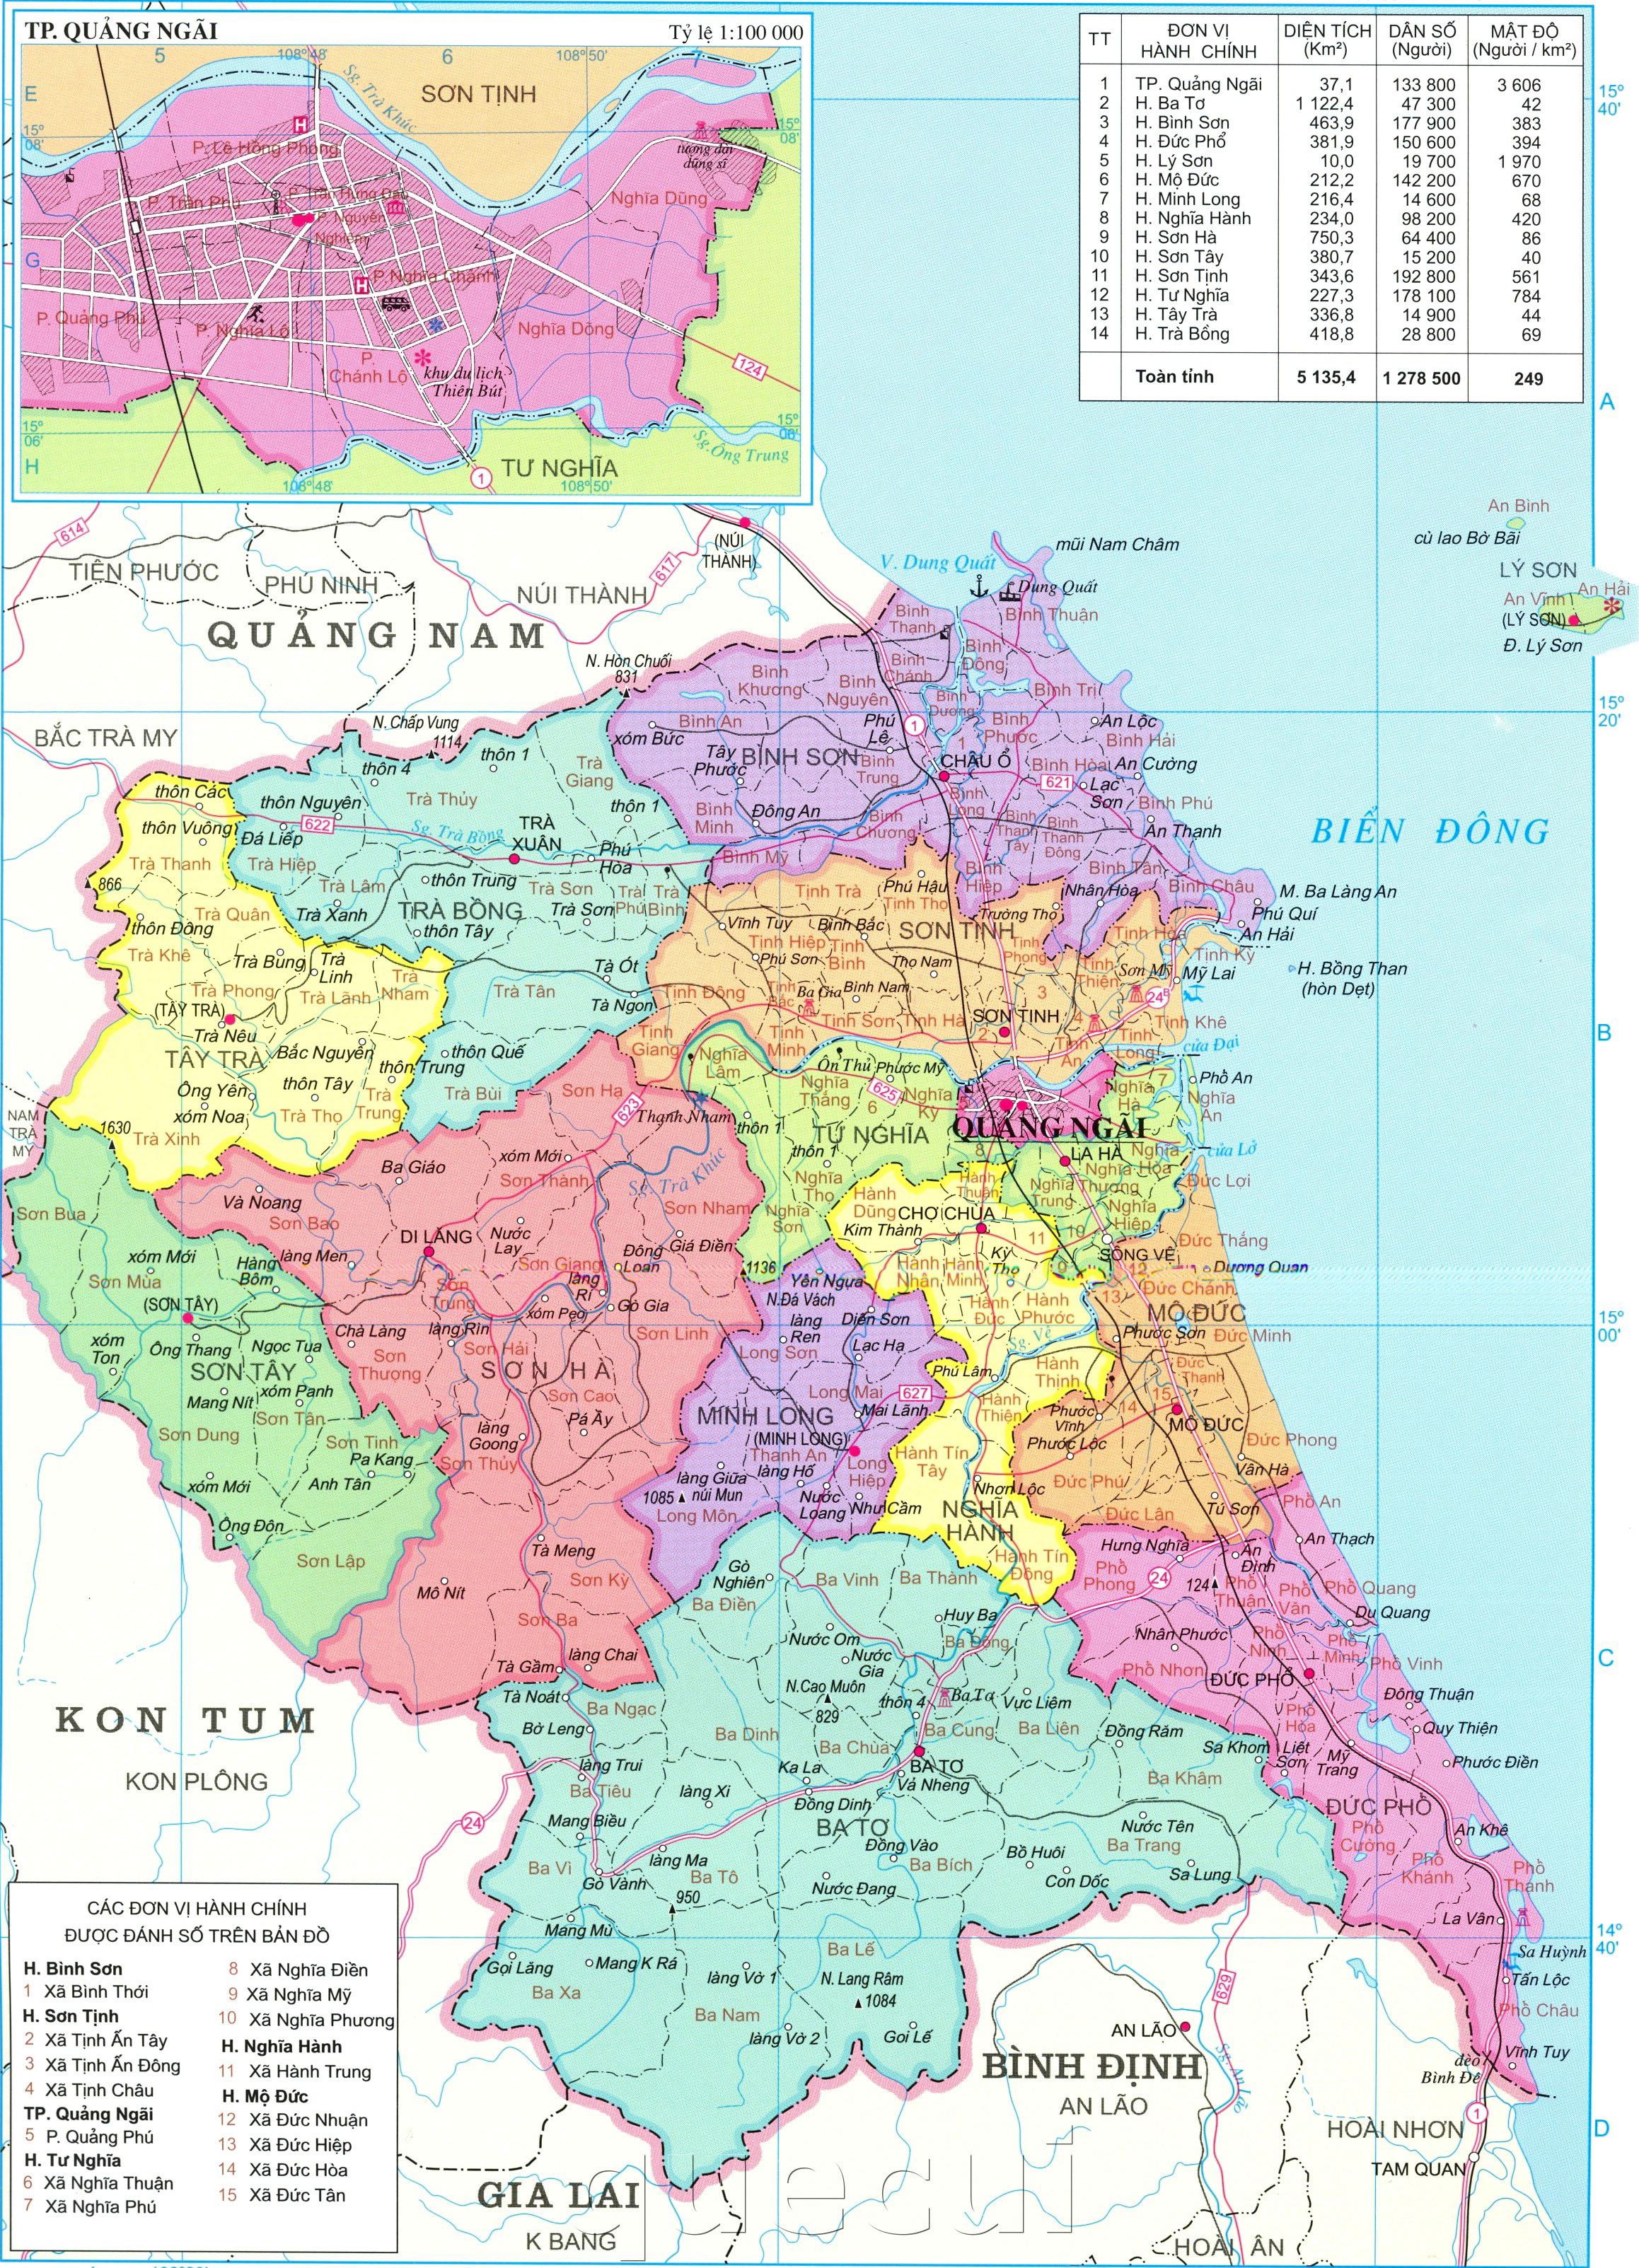 Bản đồ Quảng Ngãi 2024 sẽ cho bạn một cái nhìn tổng quan về sự phát triển của thành phố. Với nền kinh tế ngày càng mạnh mẽ, Quảng Ngãi sẽ trở thành một trung tâm kinh tế trong khu vực. Bản đồ này sẽ giúp bạn có sự chuẩn bị tốt nhất cho chuyến đi của mình đến thành phố này.